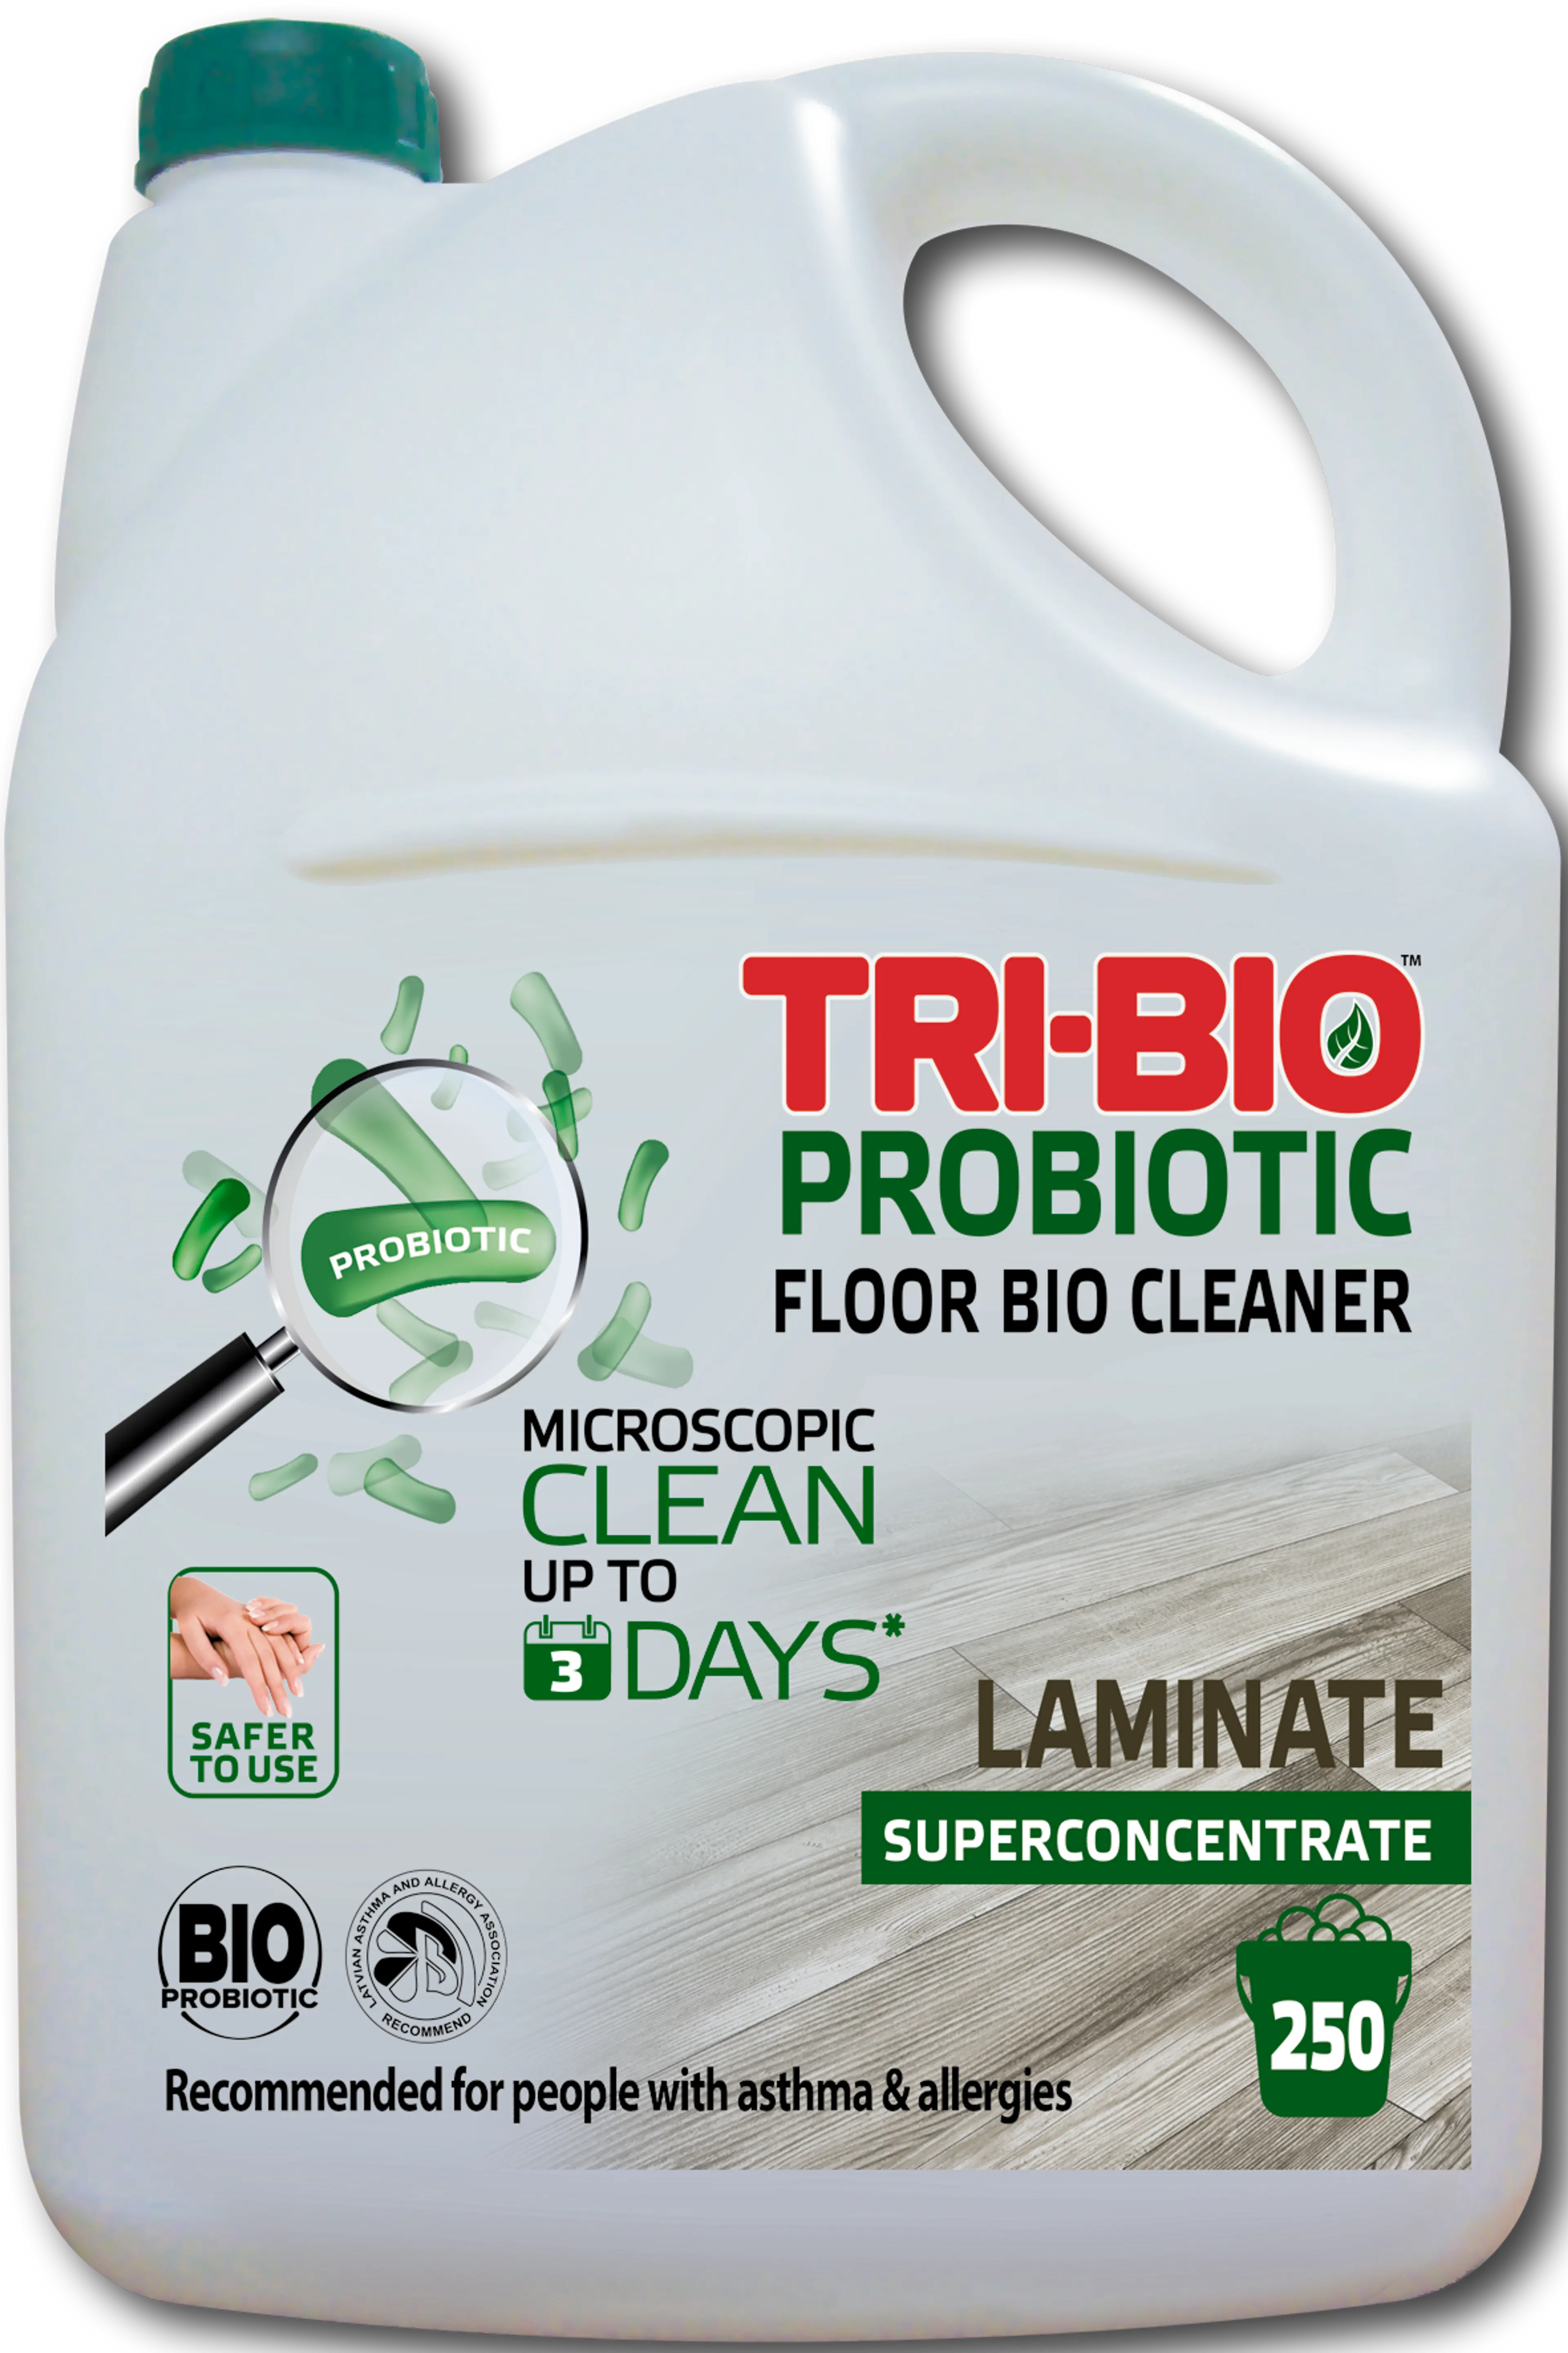 Натурален препарат за ламиниран паркет Laminated bio cleaner, 4, 4 л.